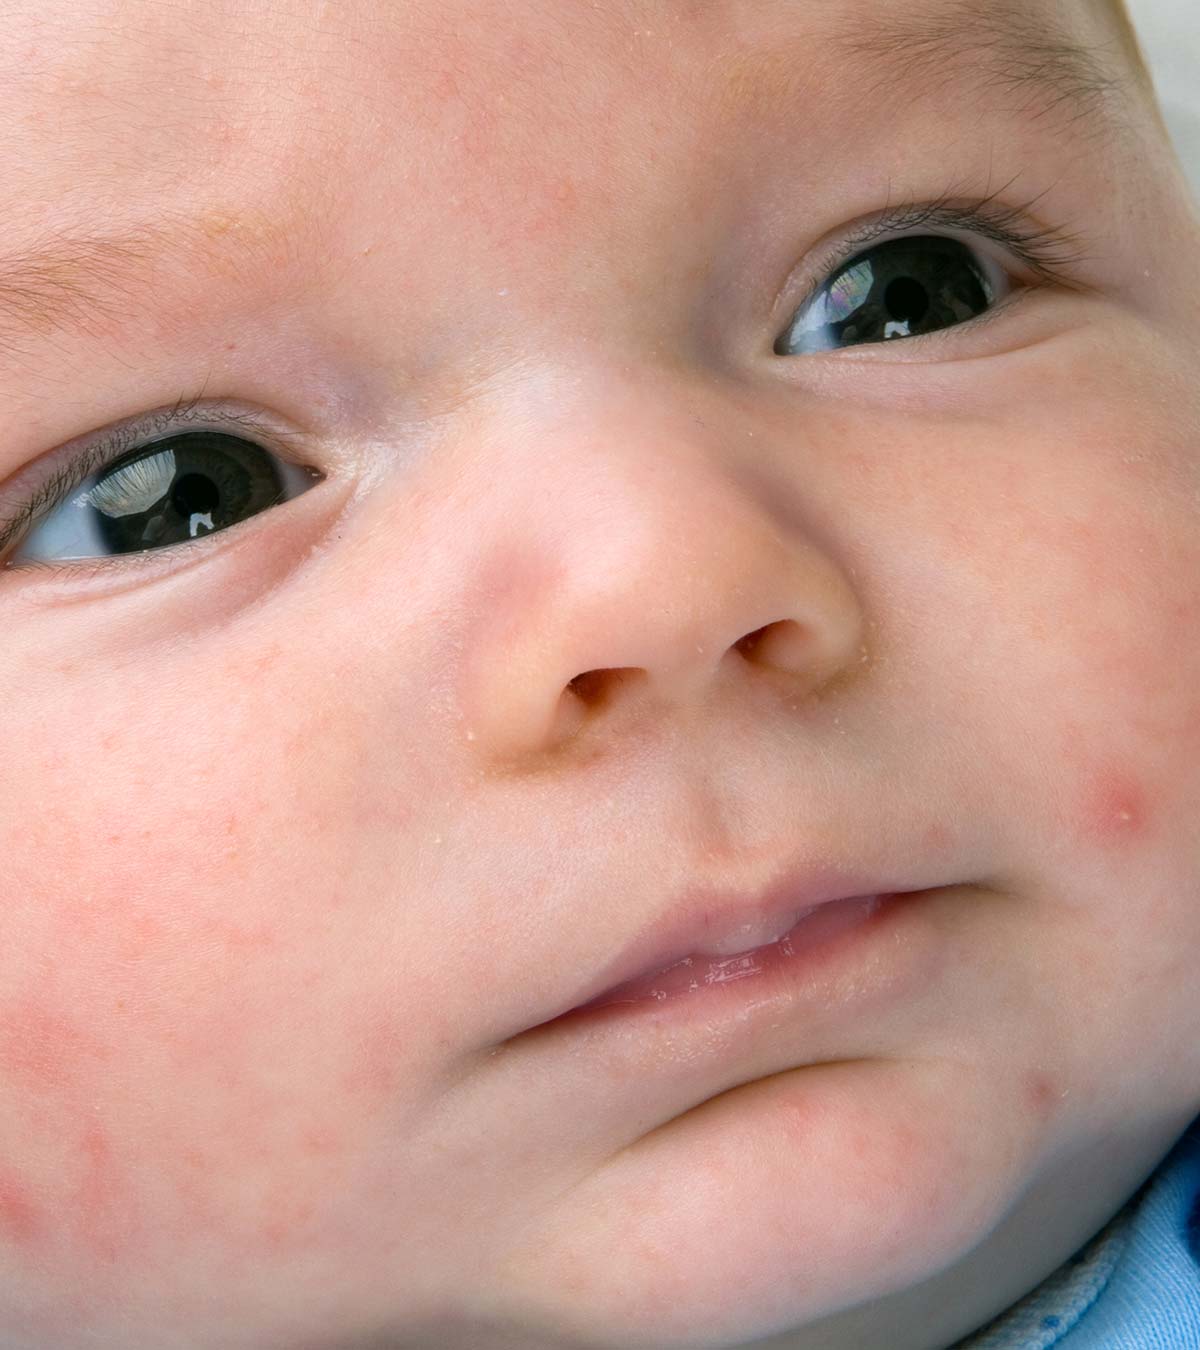 婴儿身上的瘀点:原因、症状、诊断和治疗